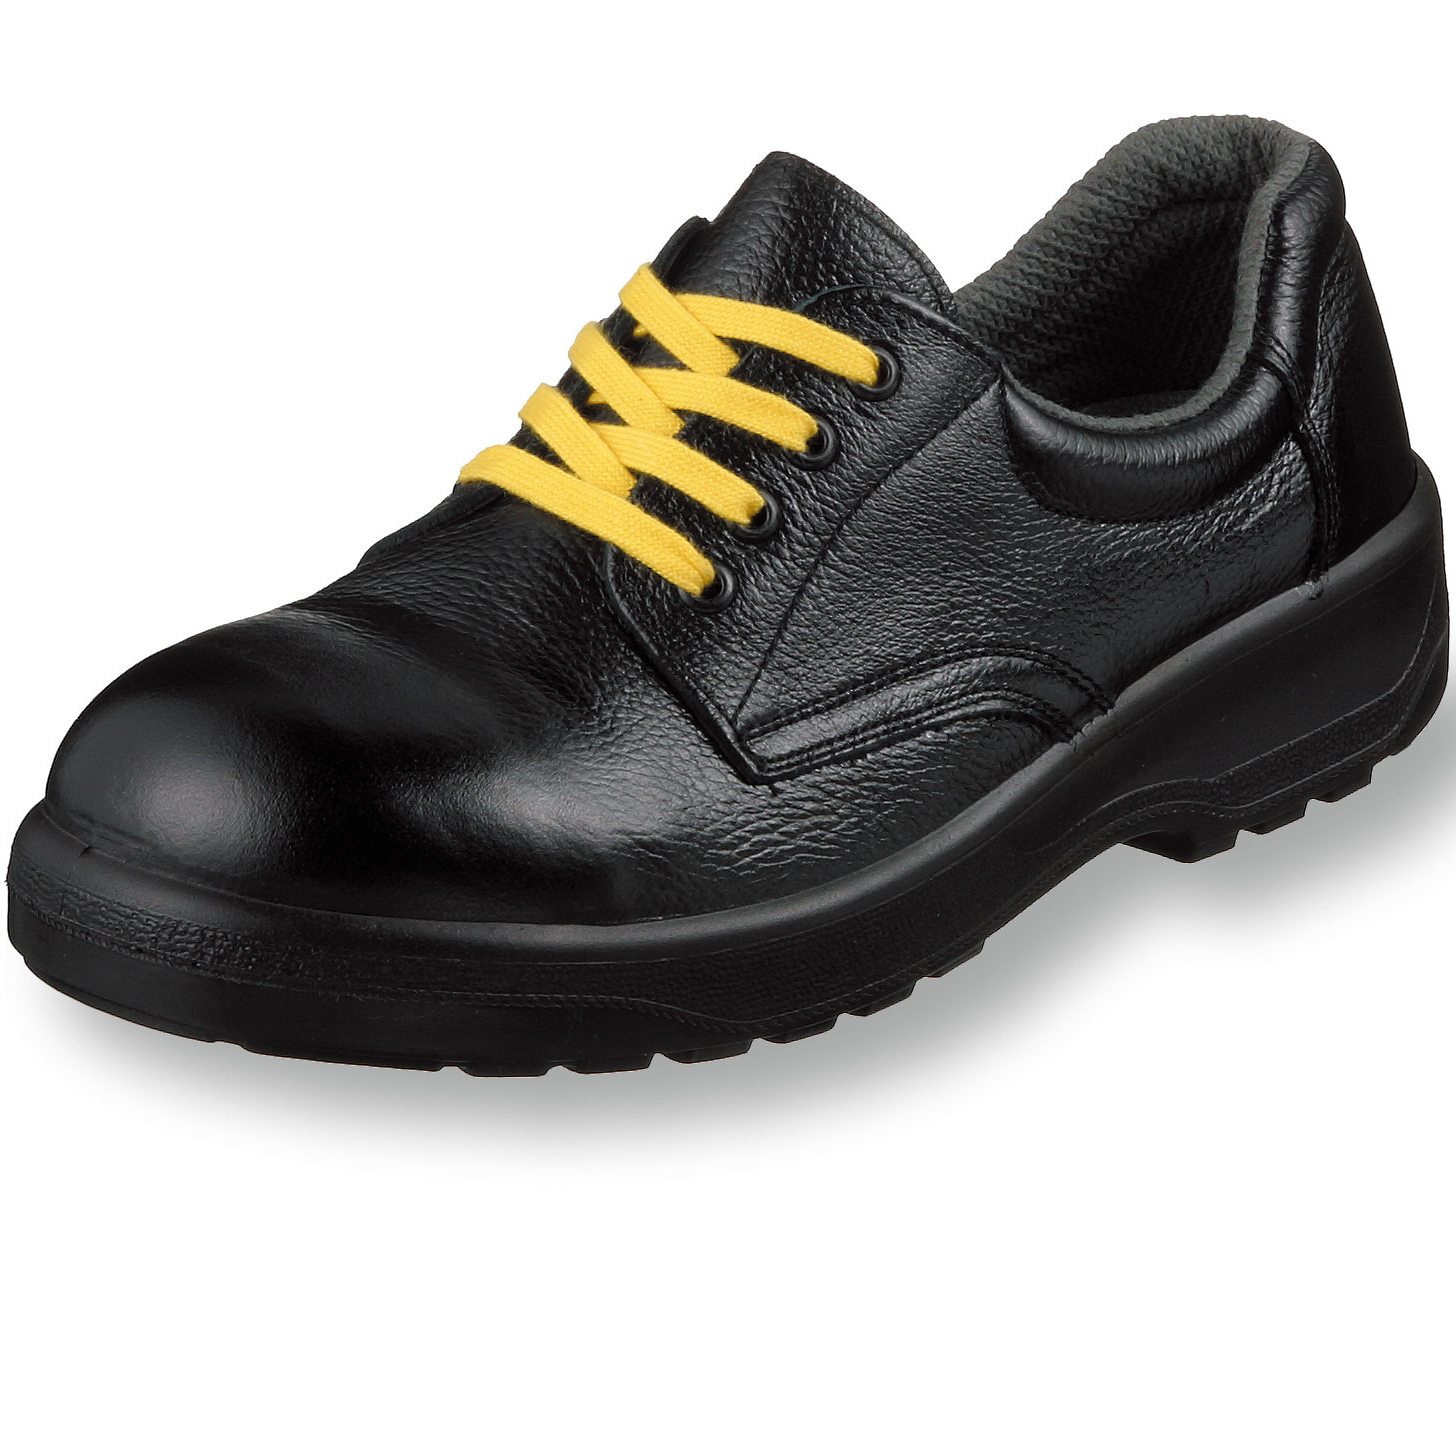 静電靴 | 株式会社 エンゼル 安全靴・作業靴・静電靴